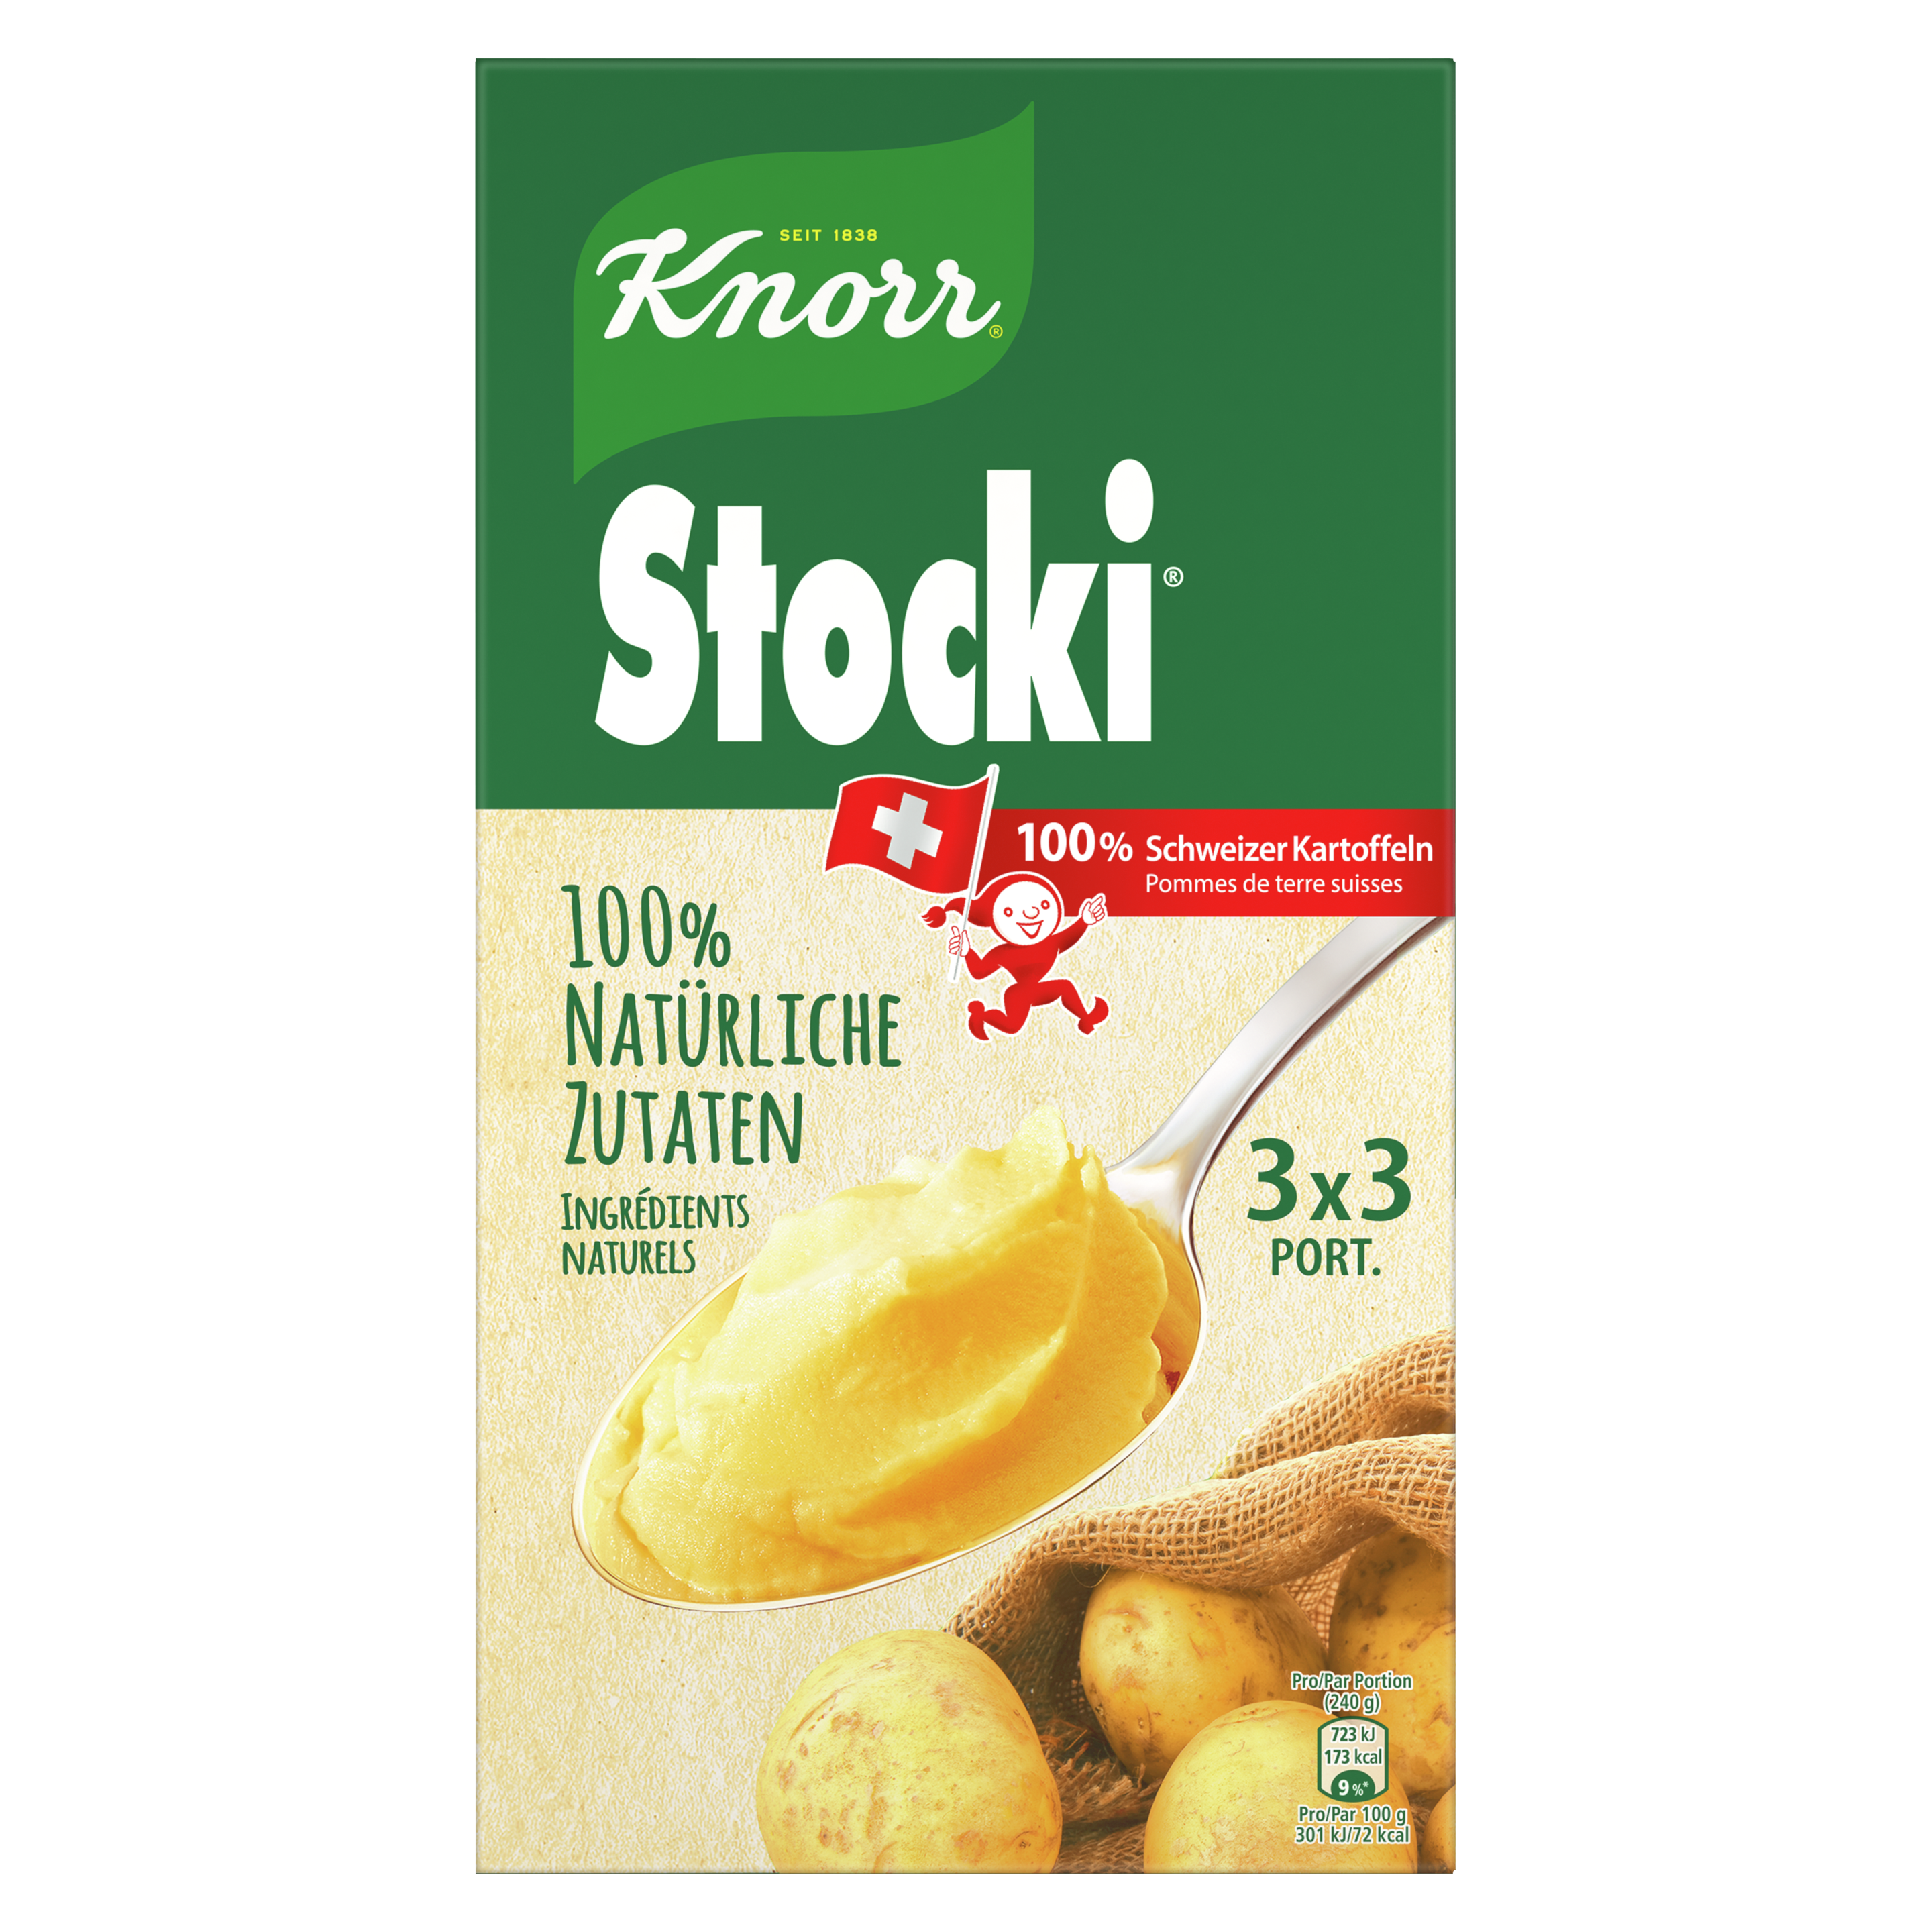 KNORR 100% natürliche Zutaten Stocki Kartoffelstock Packung 3 x 3 Portionen